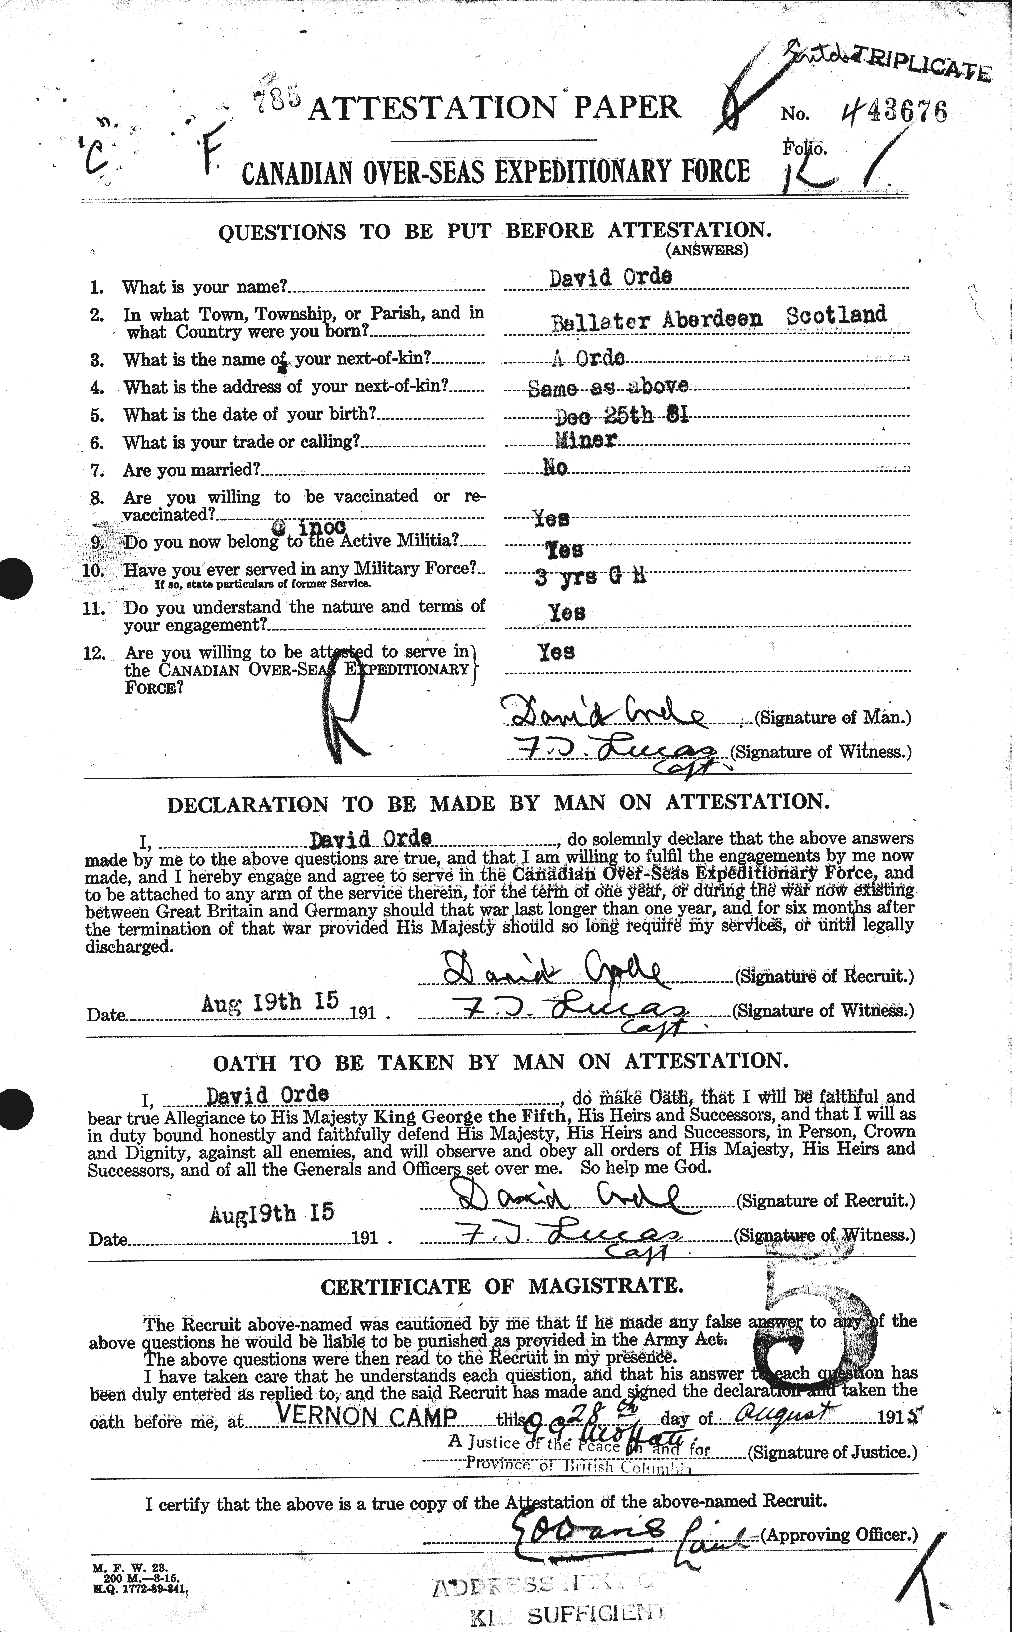 Dossiers du Personnel de la Première Guerre mondiale - CEC 559415a